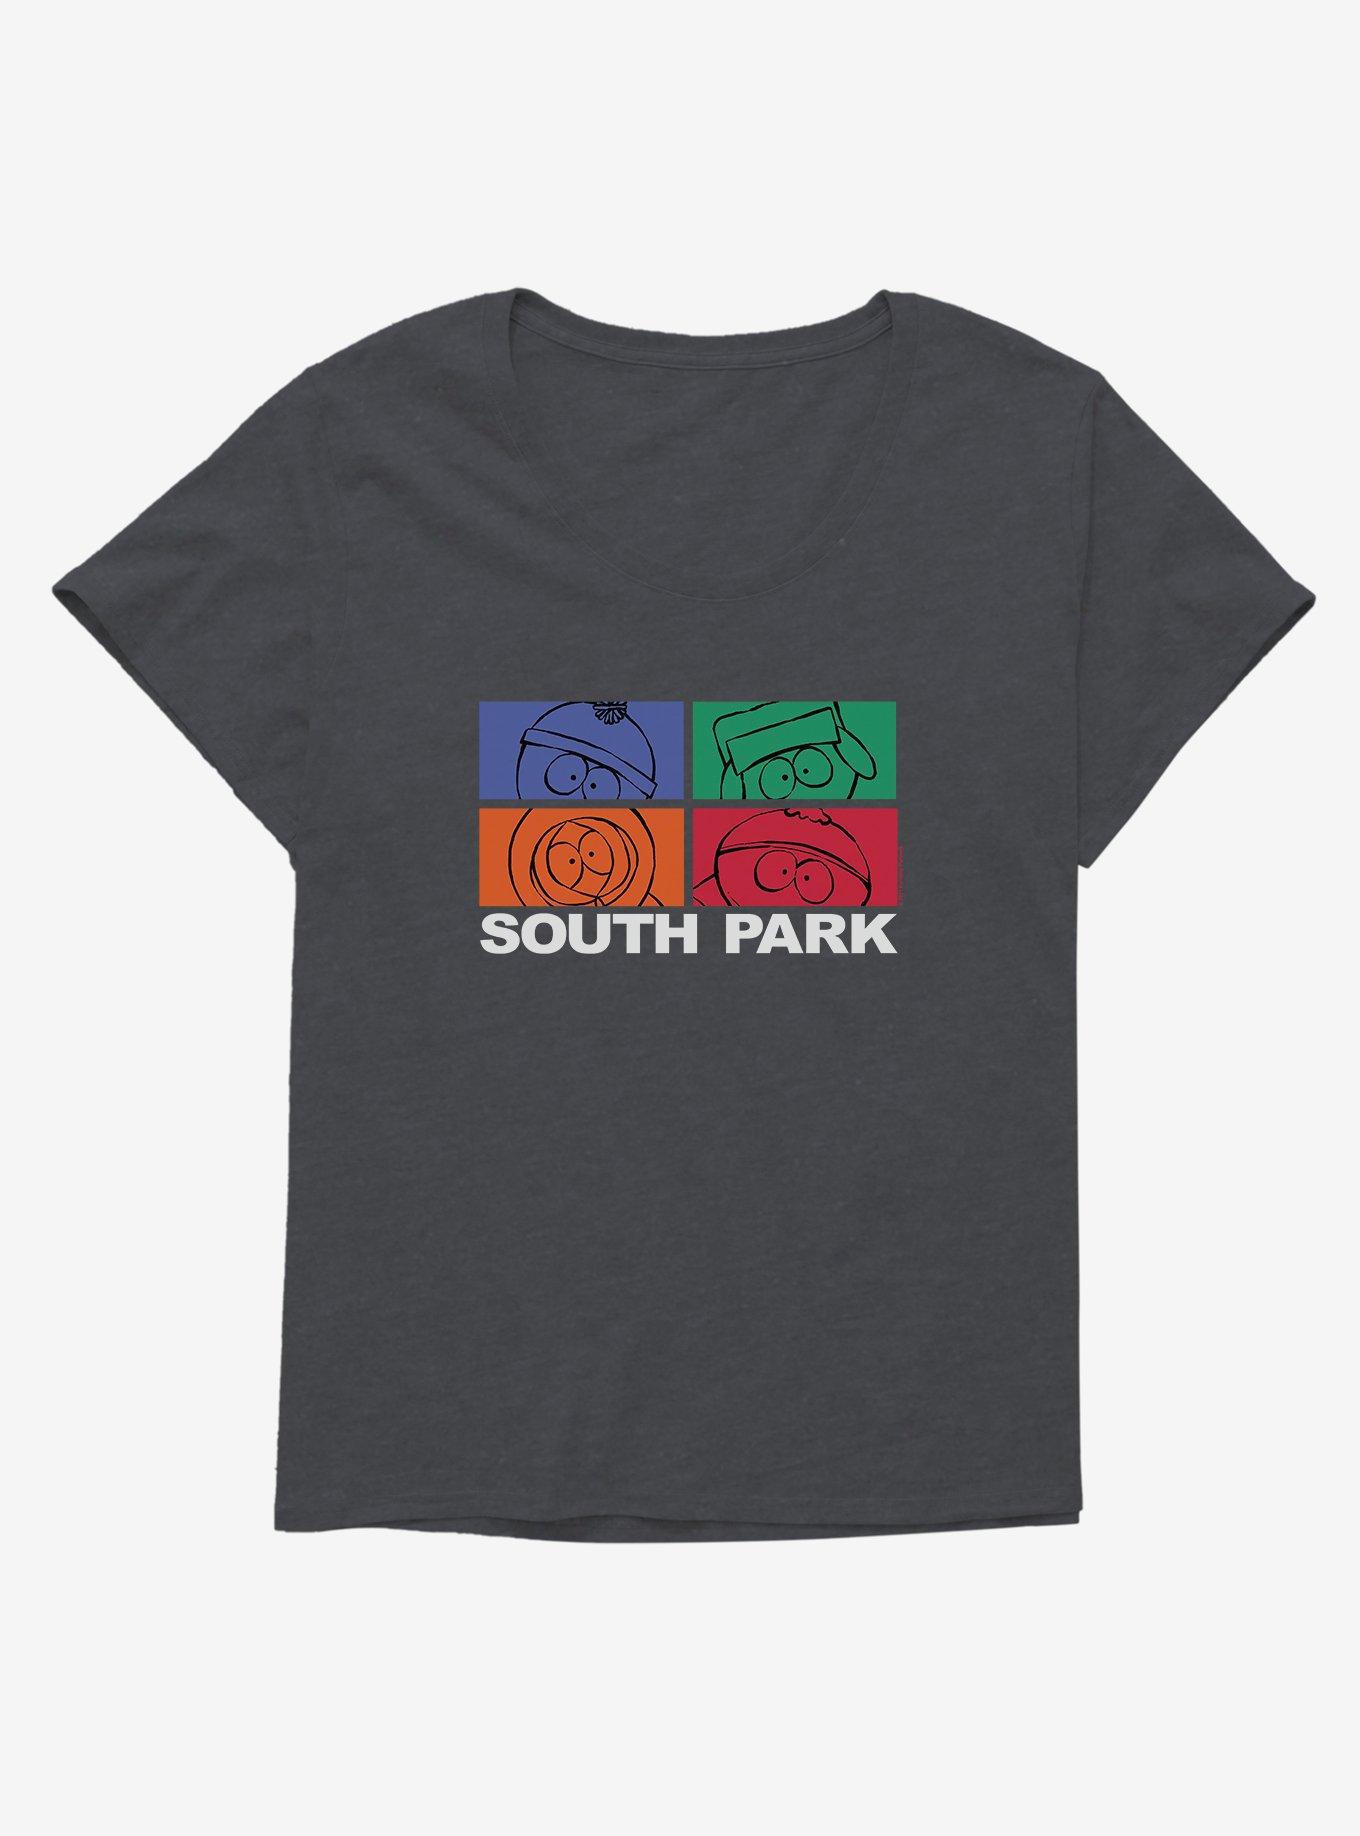 South Park Faces Girls T-Shirt Plus